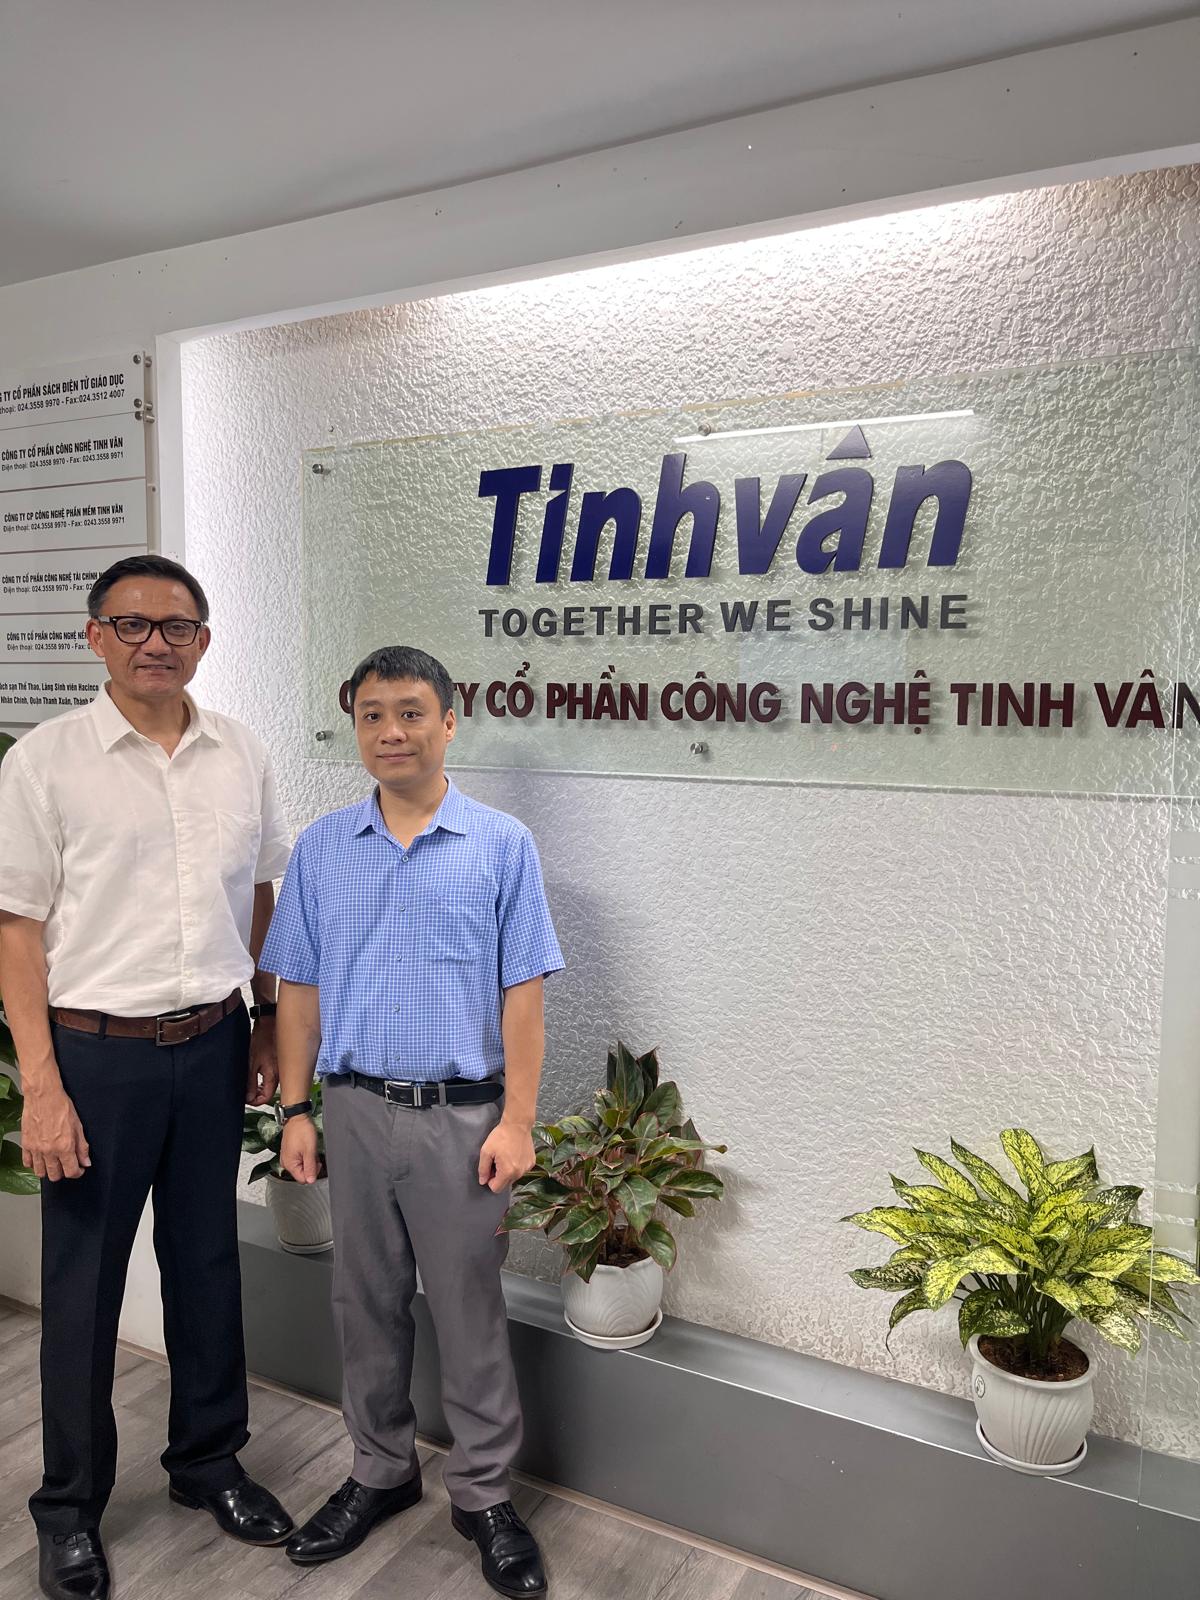 Đại diện Tescom ghé thăm Trụ sở của Tinhvan Software tại Hà Nội